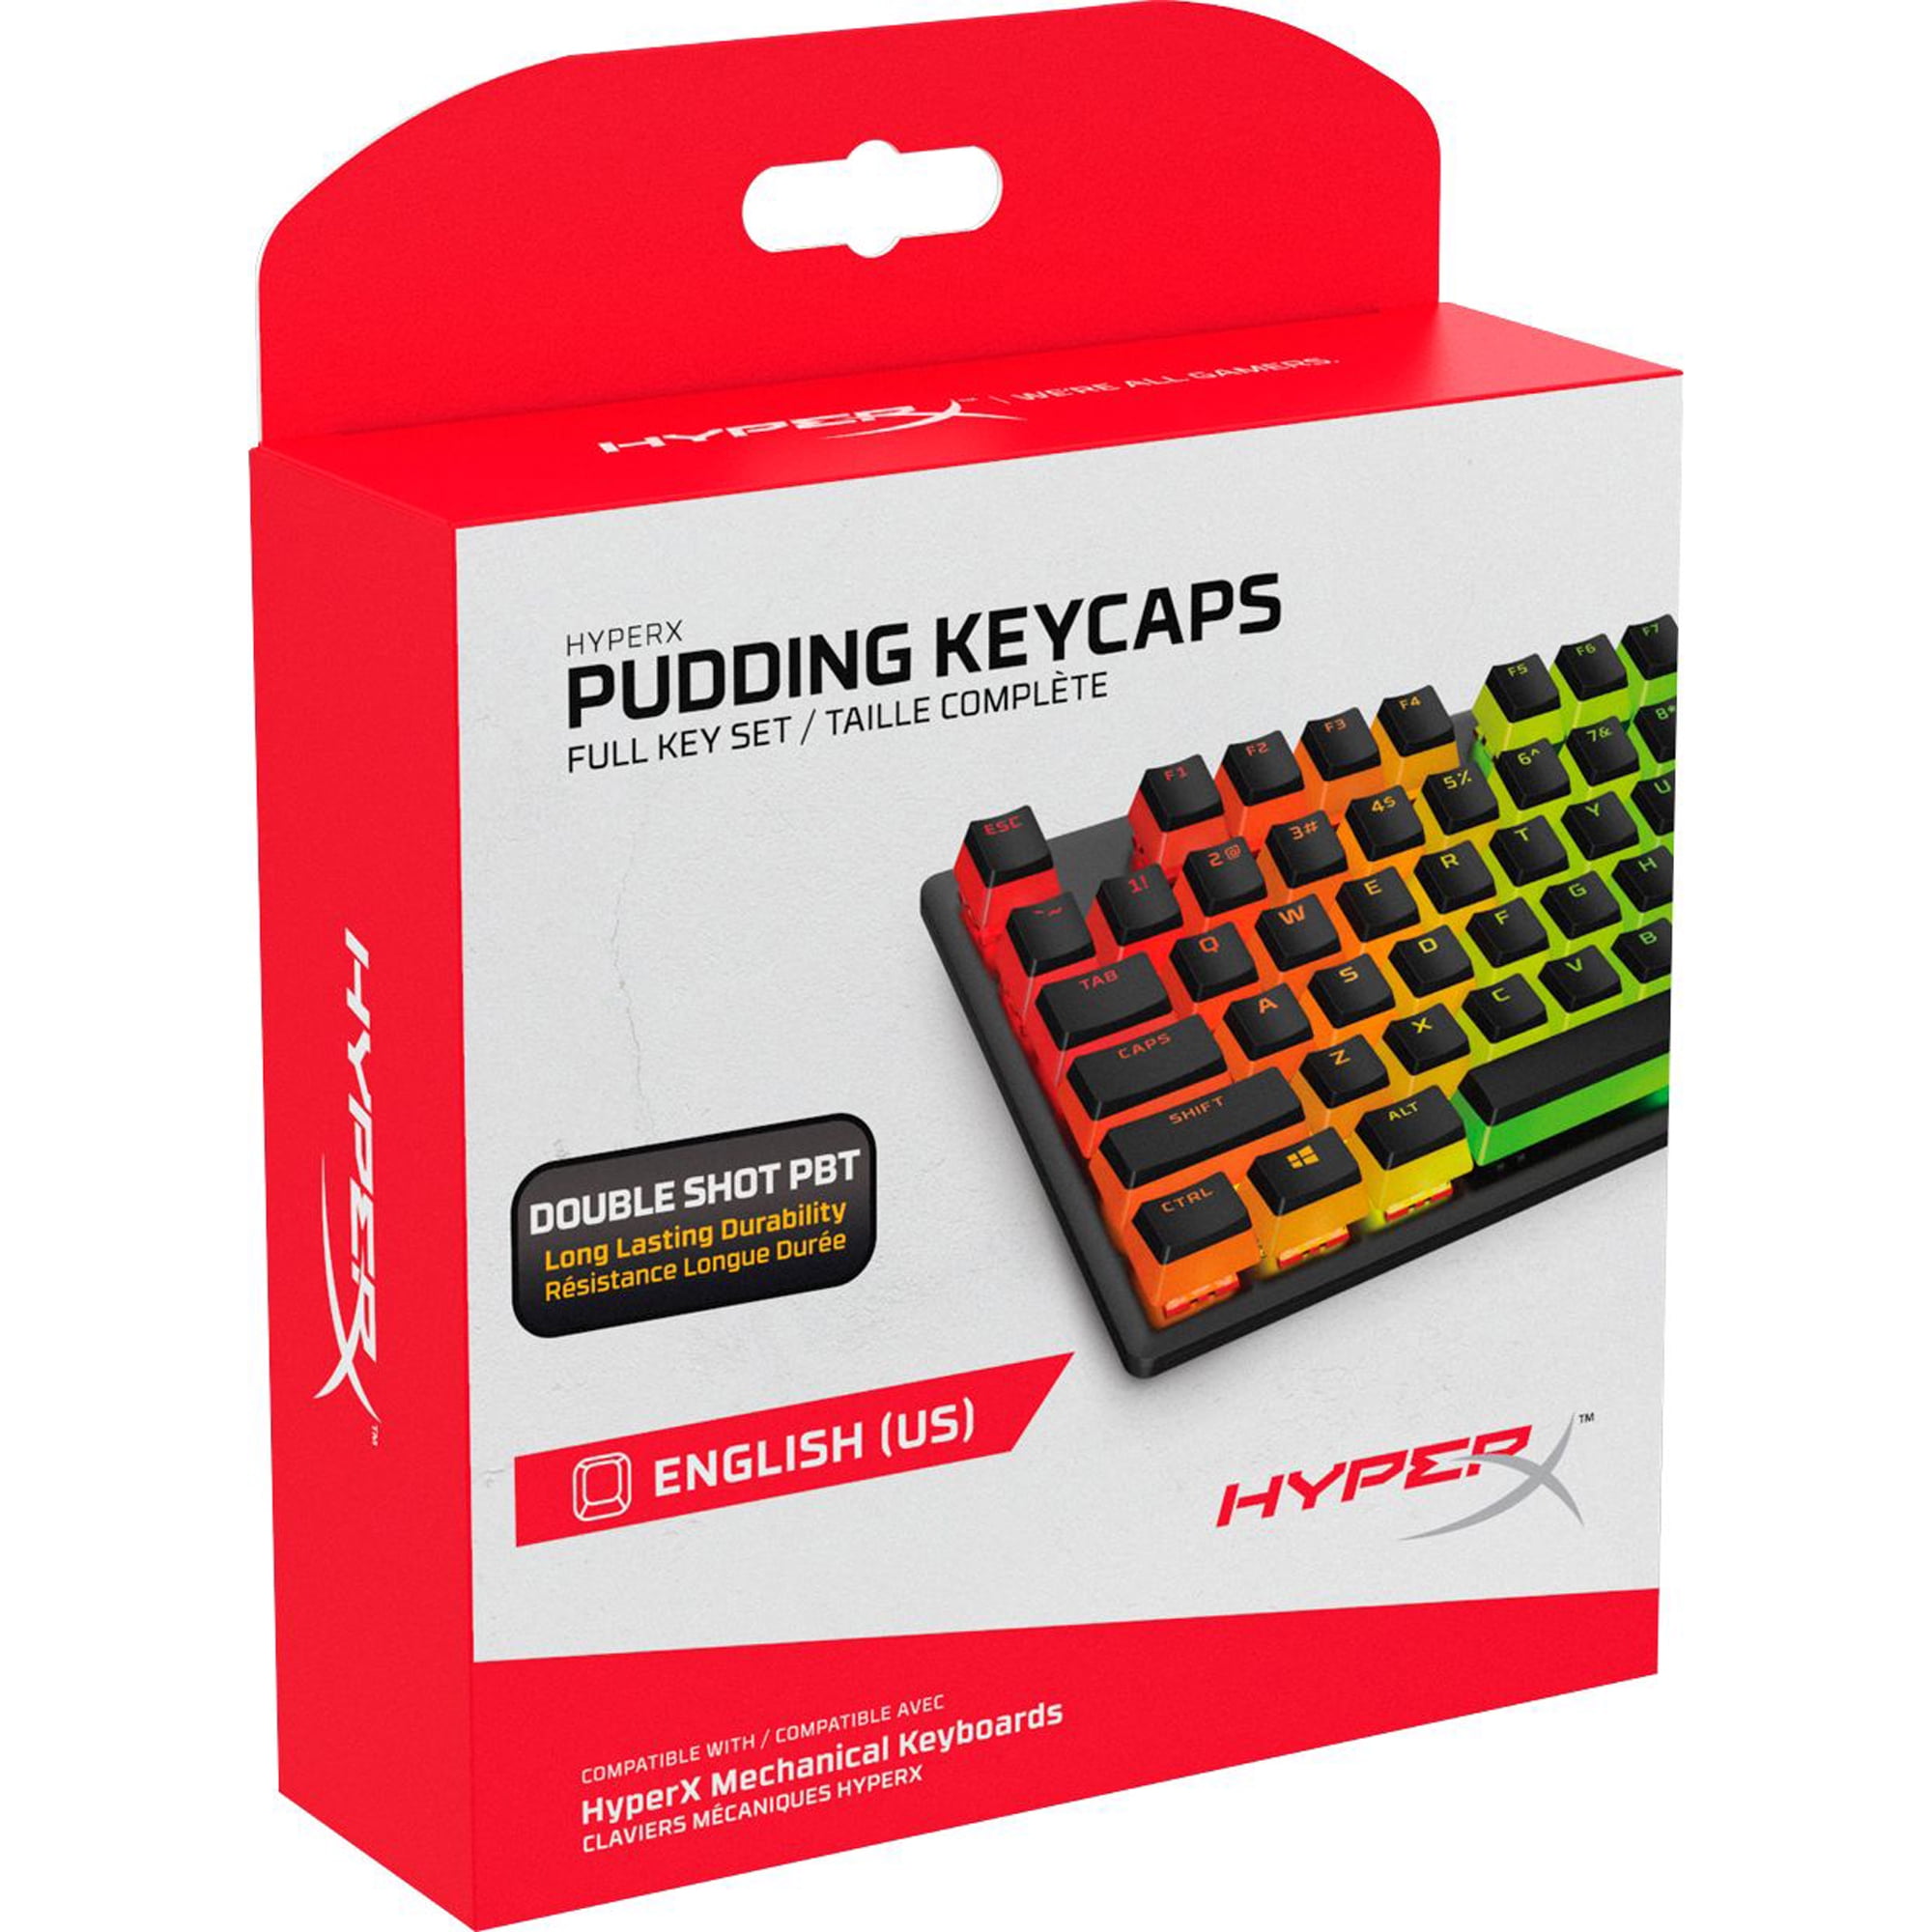 HyperX Pudding Keycaps 2 - Full Key Set - PBT - Black (US Layout)|7G8K1AA#ABA|HP HyperX